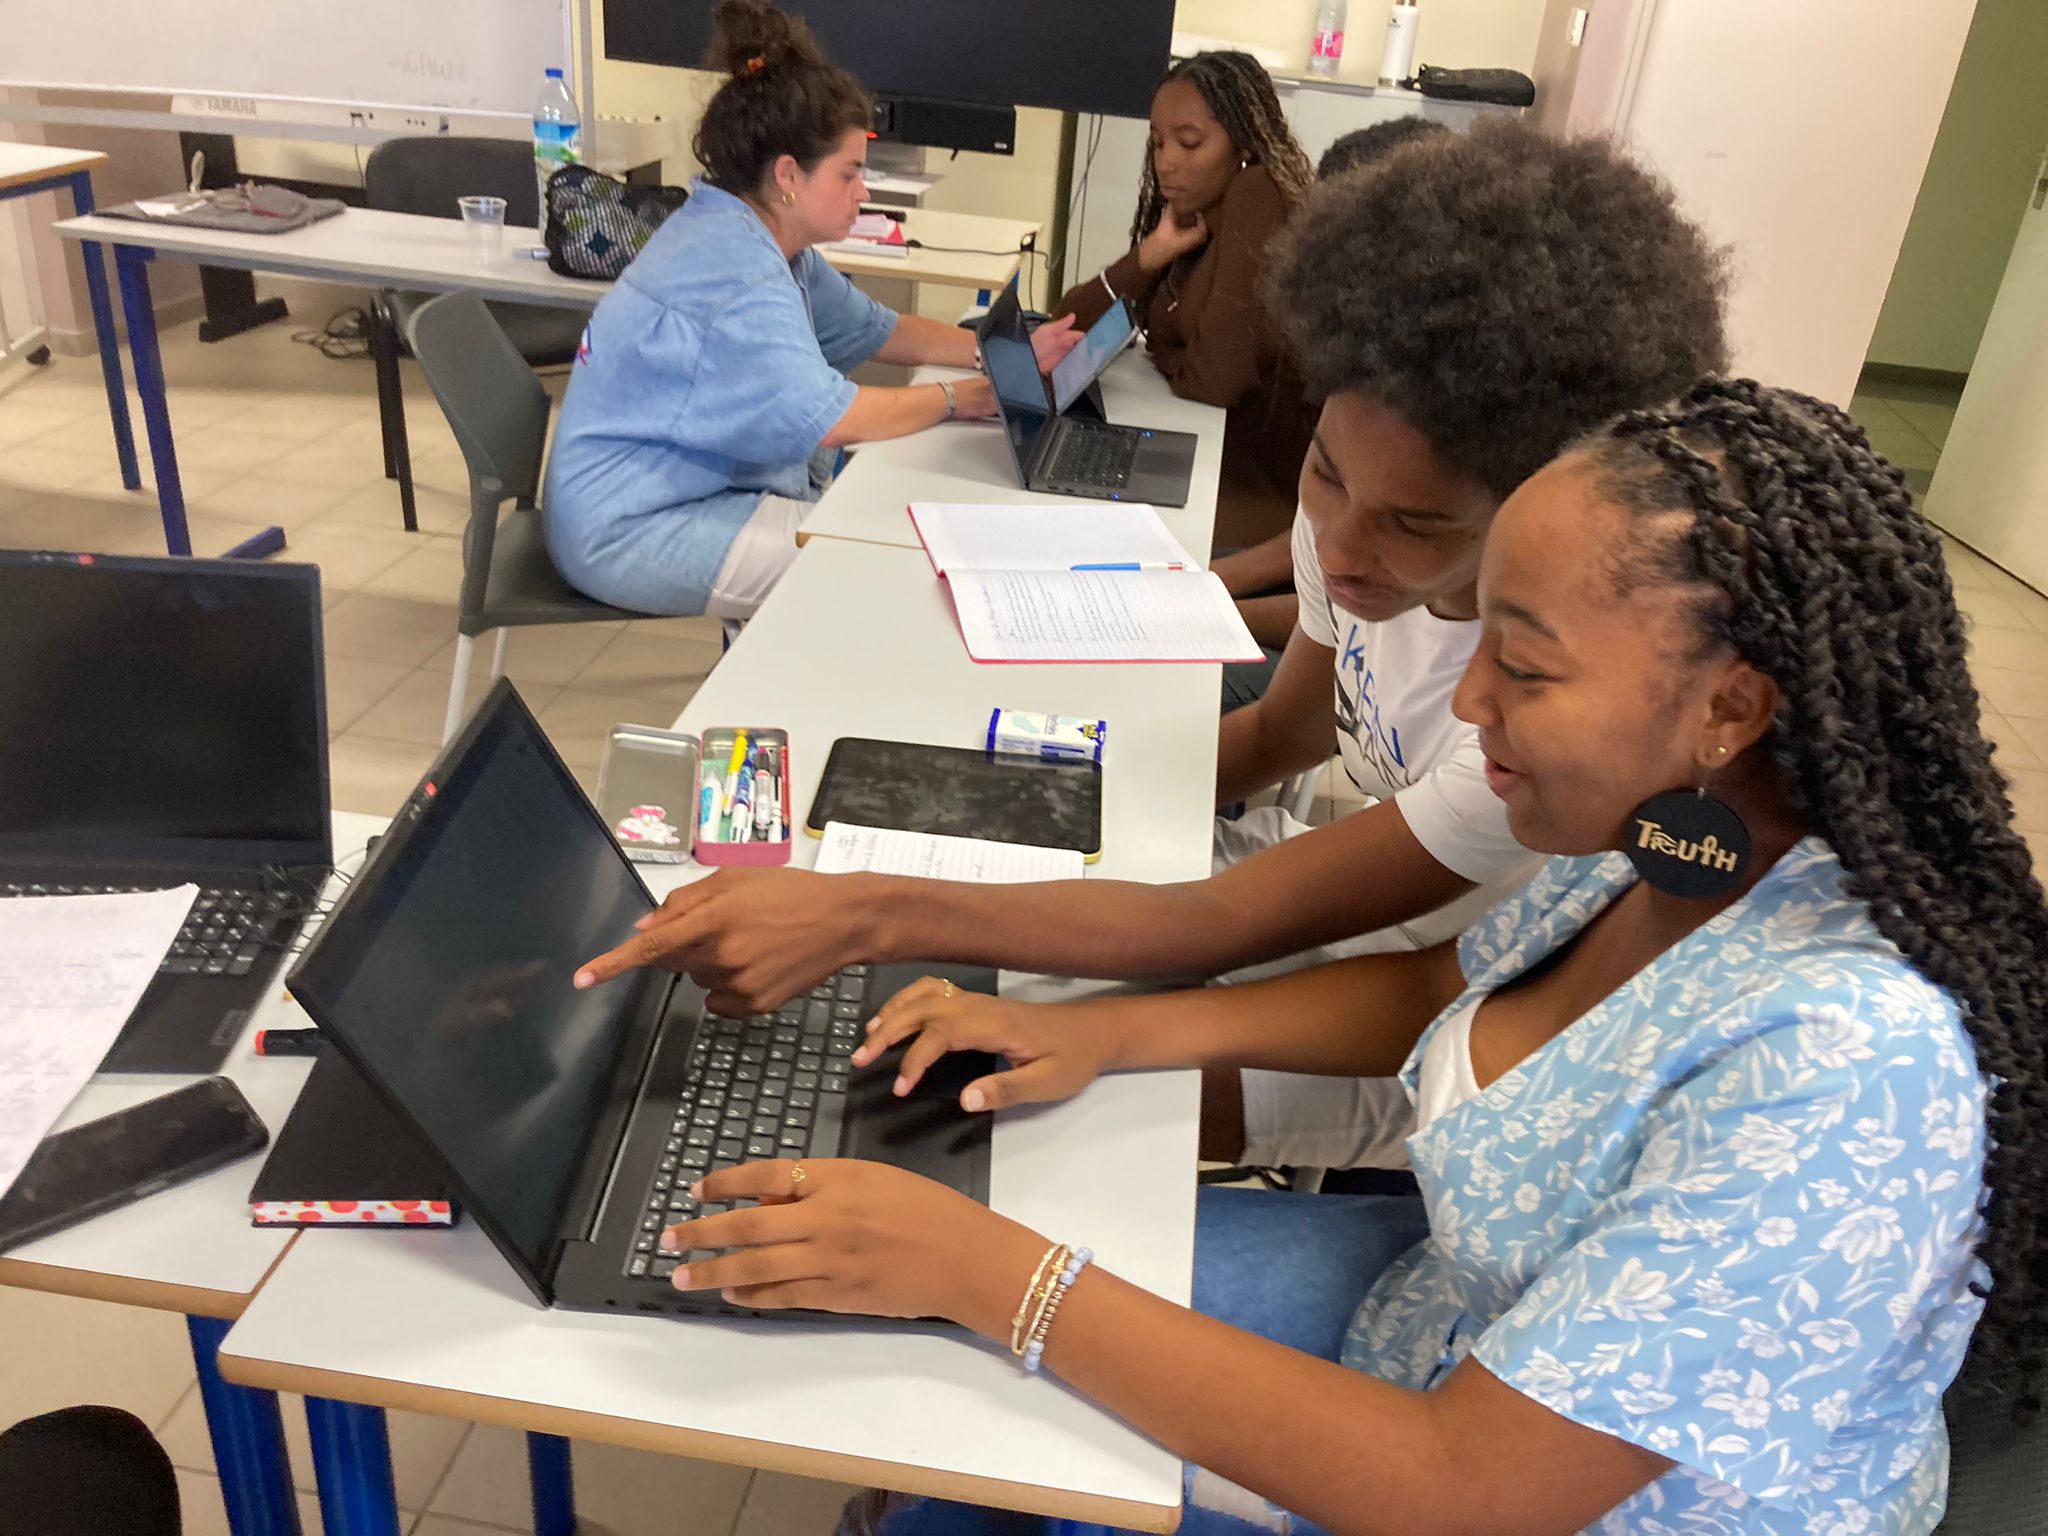     L’école W lance un stage de découverte du journalisme en Martinique

